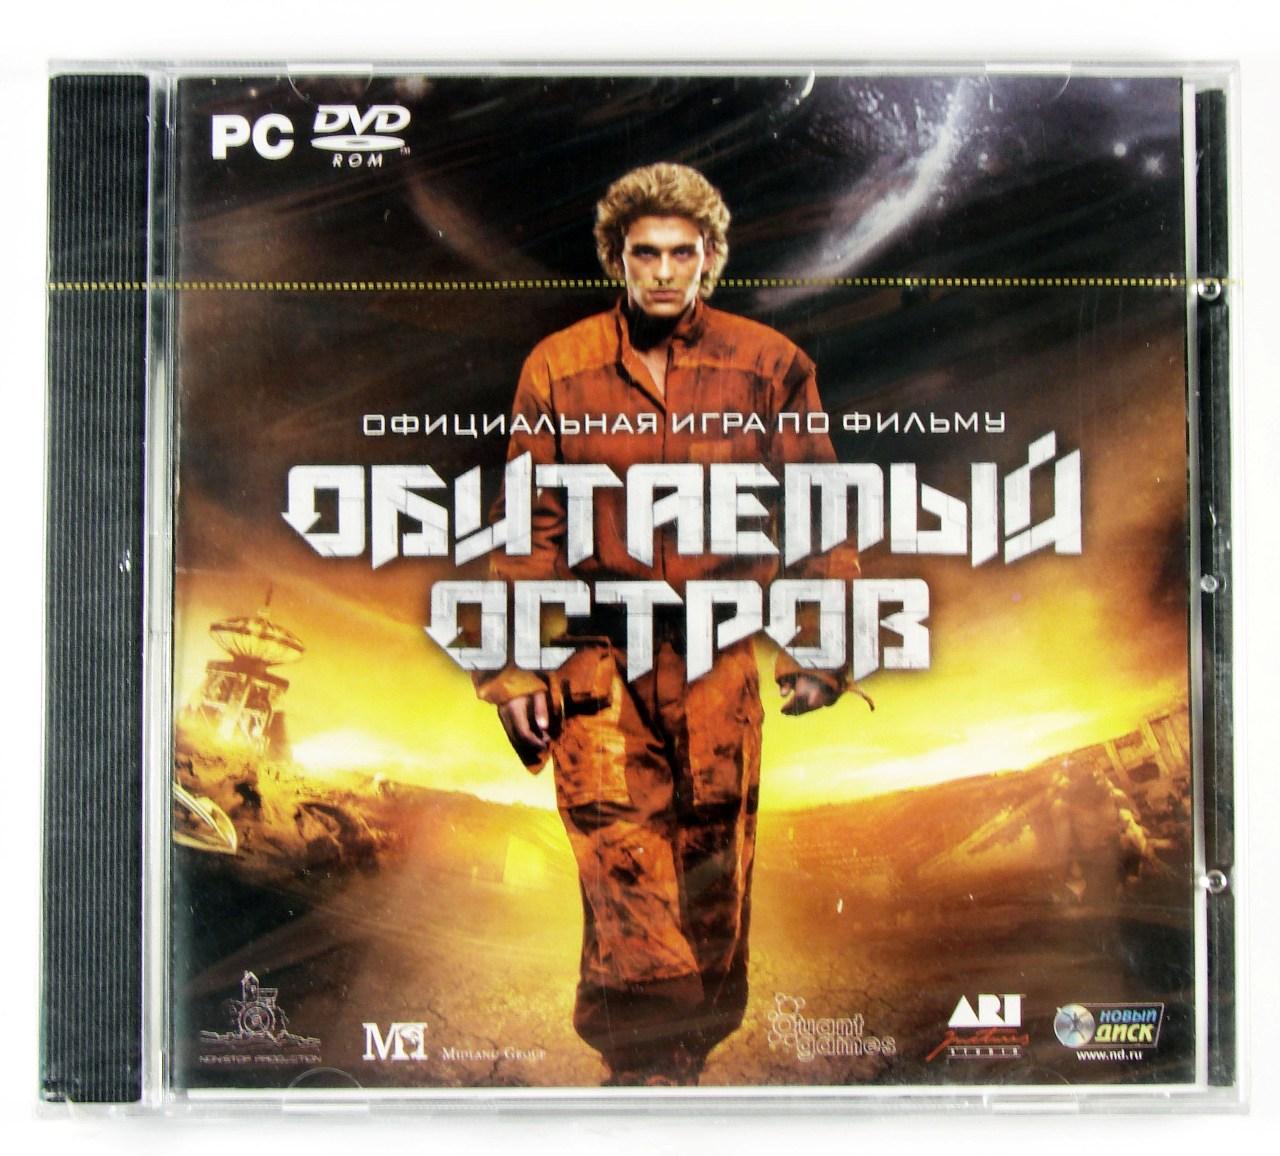 Компьютерный компакт-диск Обитаемый остров (ПК), фирма "Новый Диск", DVD